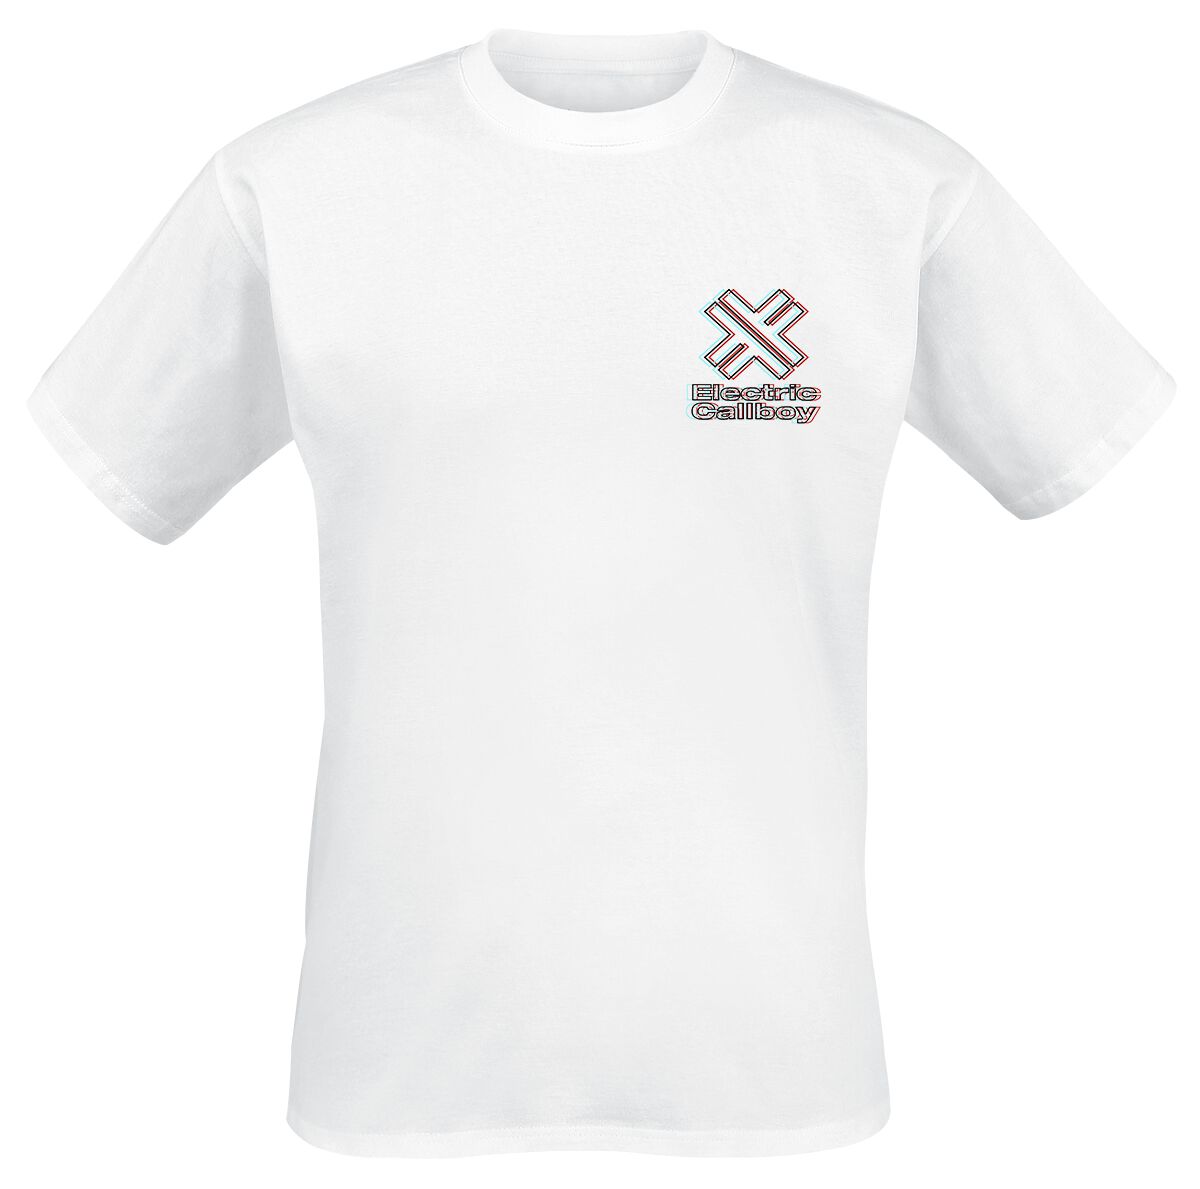 Electric Callboy T-Shirt - In Tekkno We Trust - S bis 3XL - für Männer - Größe 3XL - weiß  - Lizenziertes Merchandise!